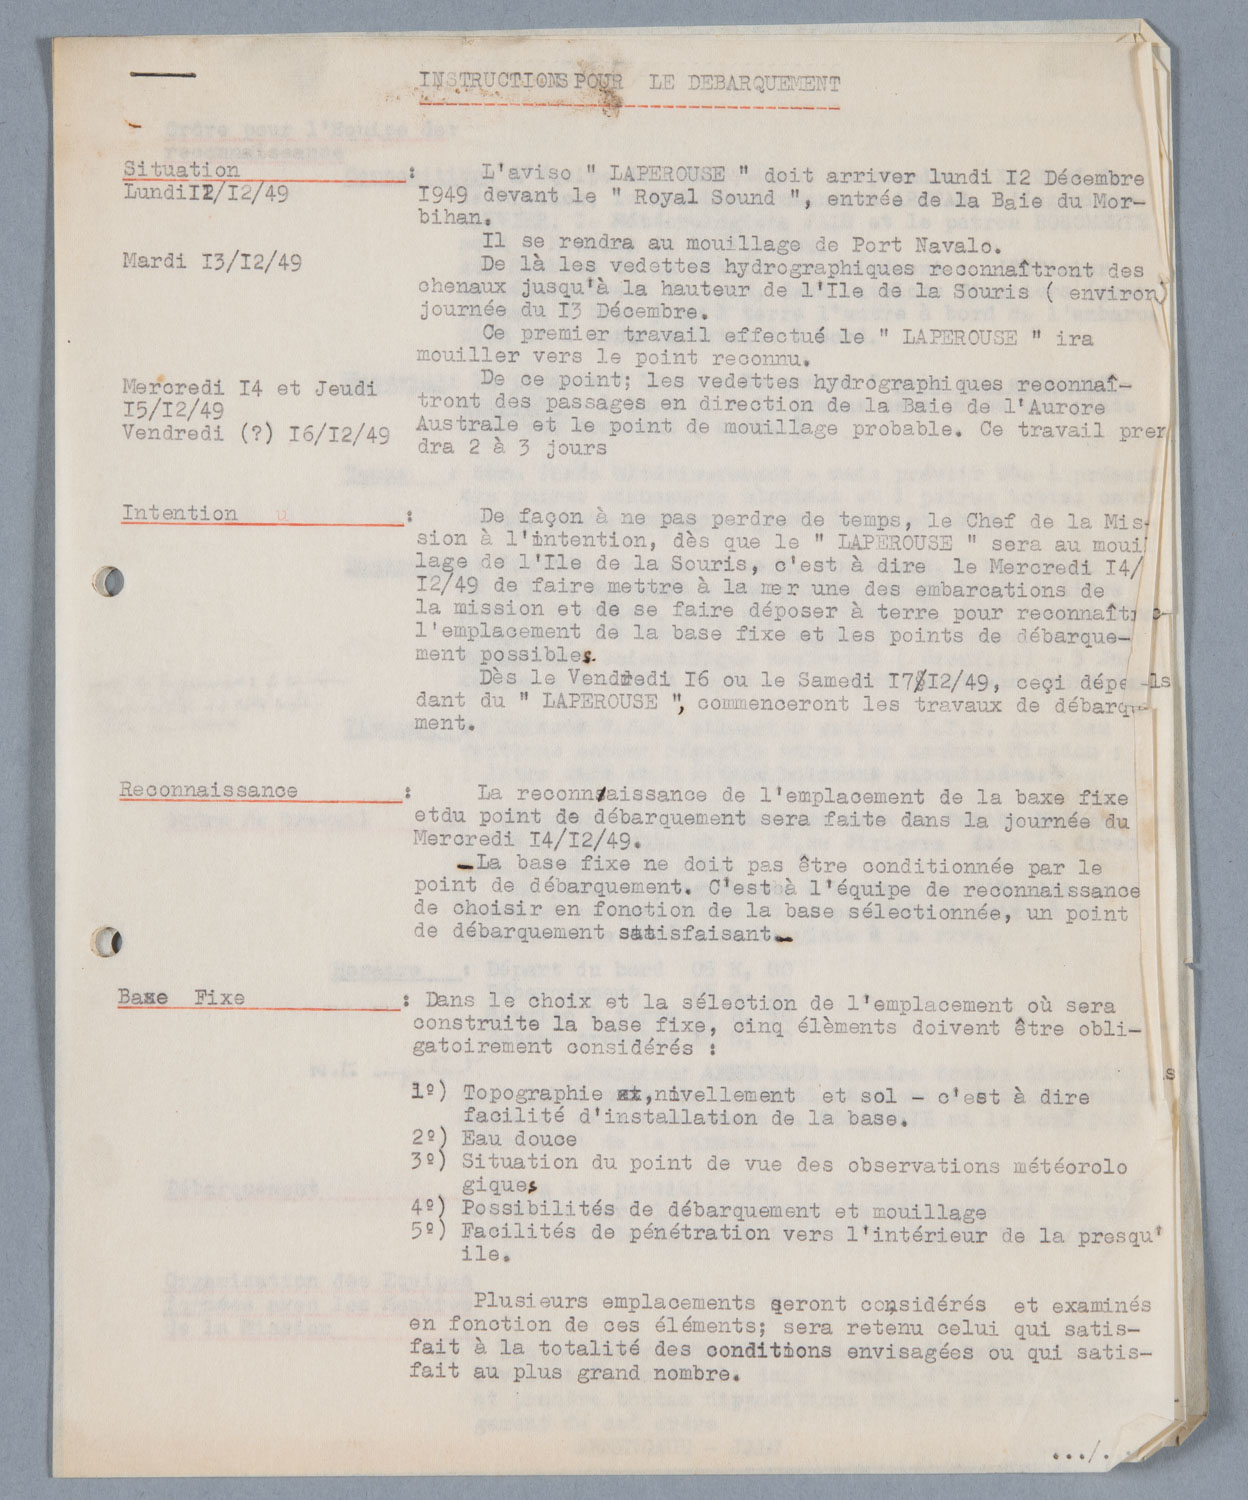 Instructions pour le débarquement, 5 décembre 1949